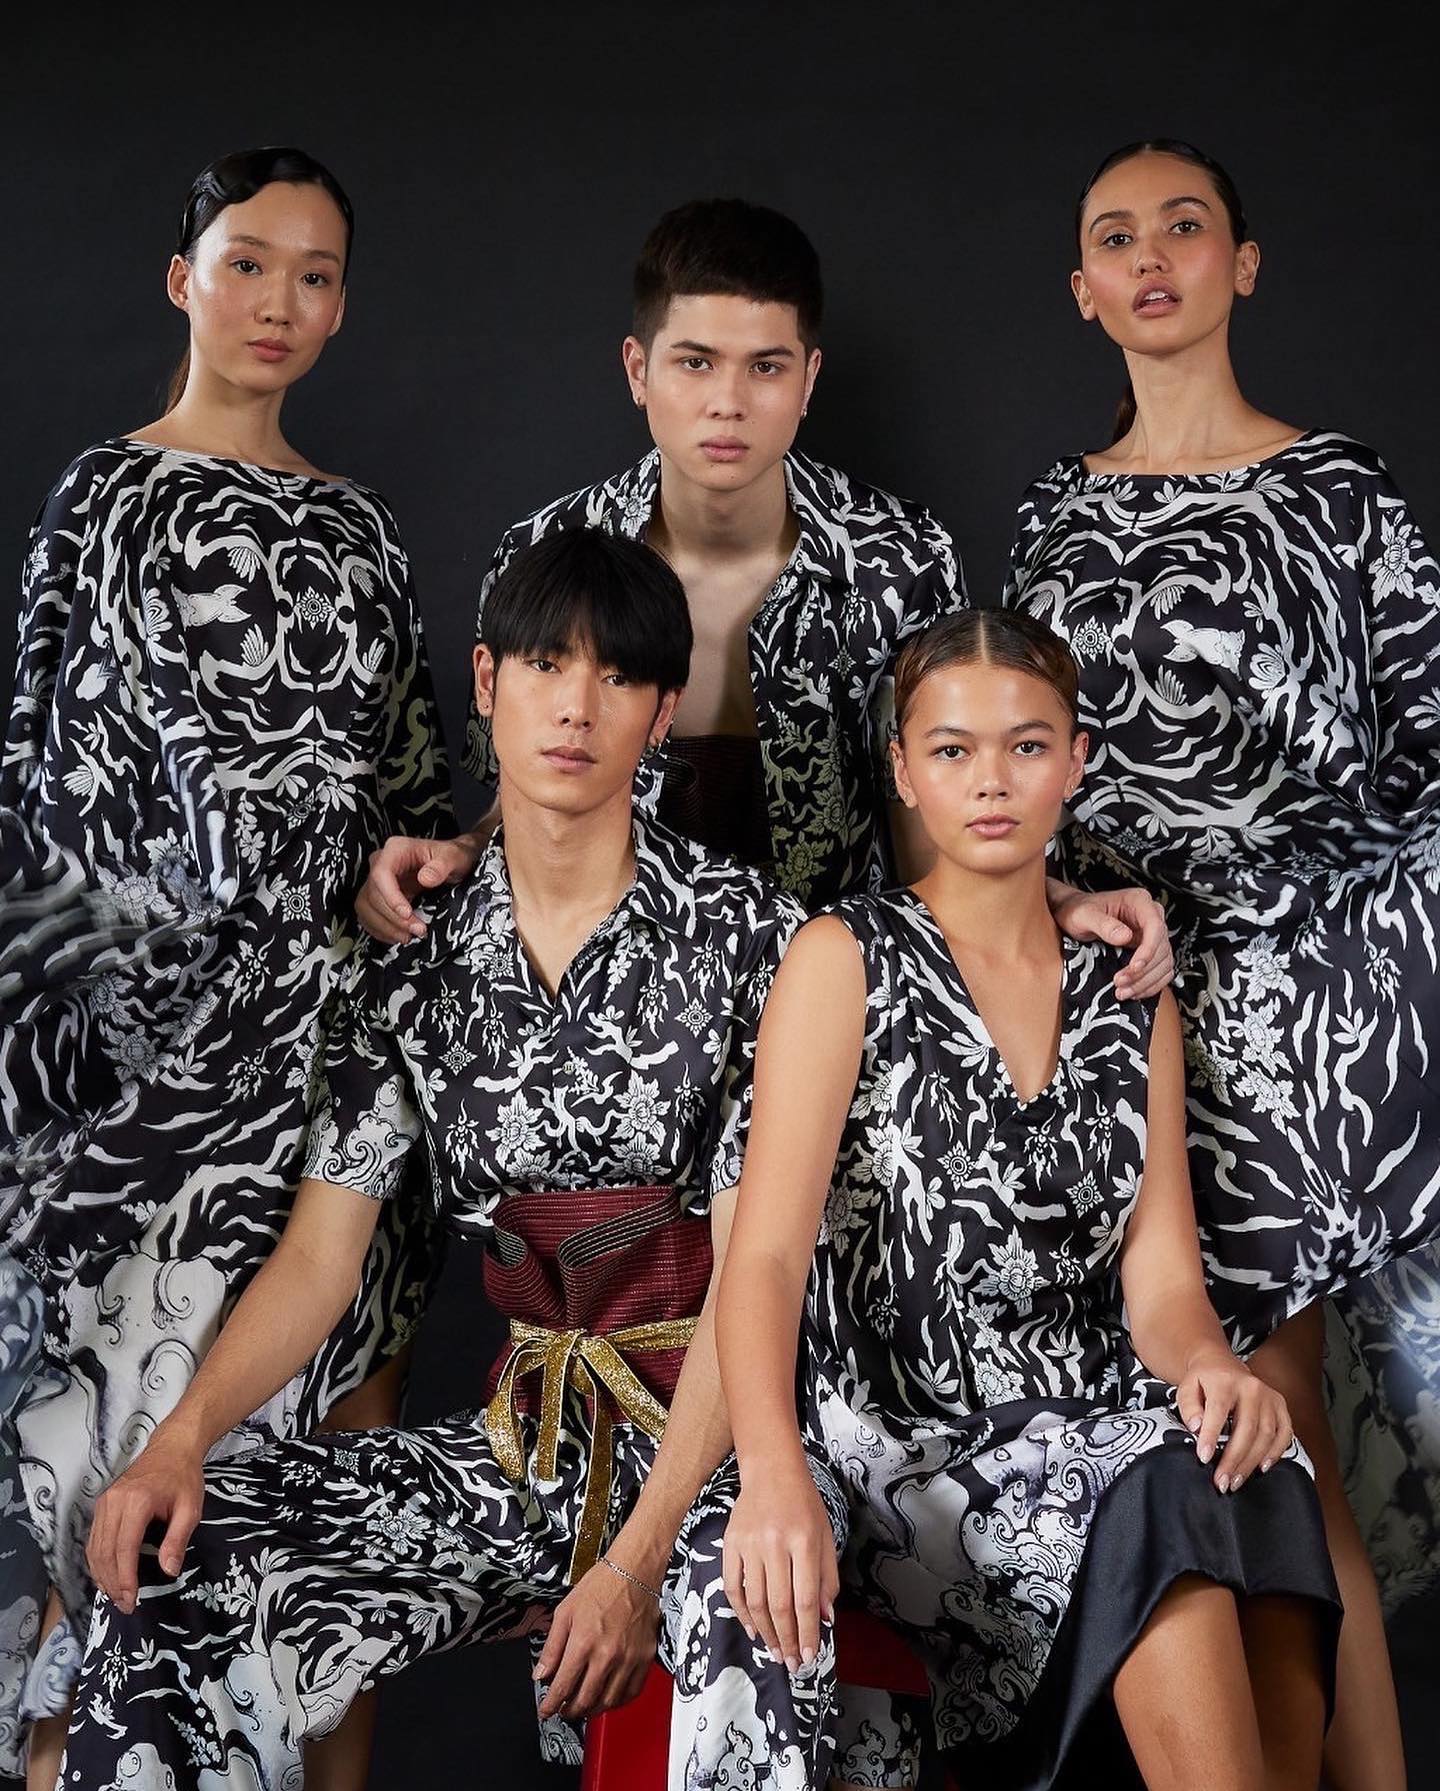 NAGARA - Fashion in Thailand Takes a New High With Creative Thai Fabrics.